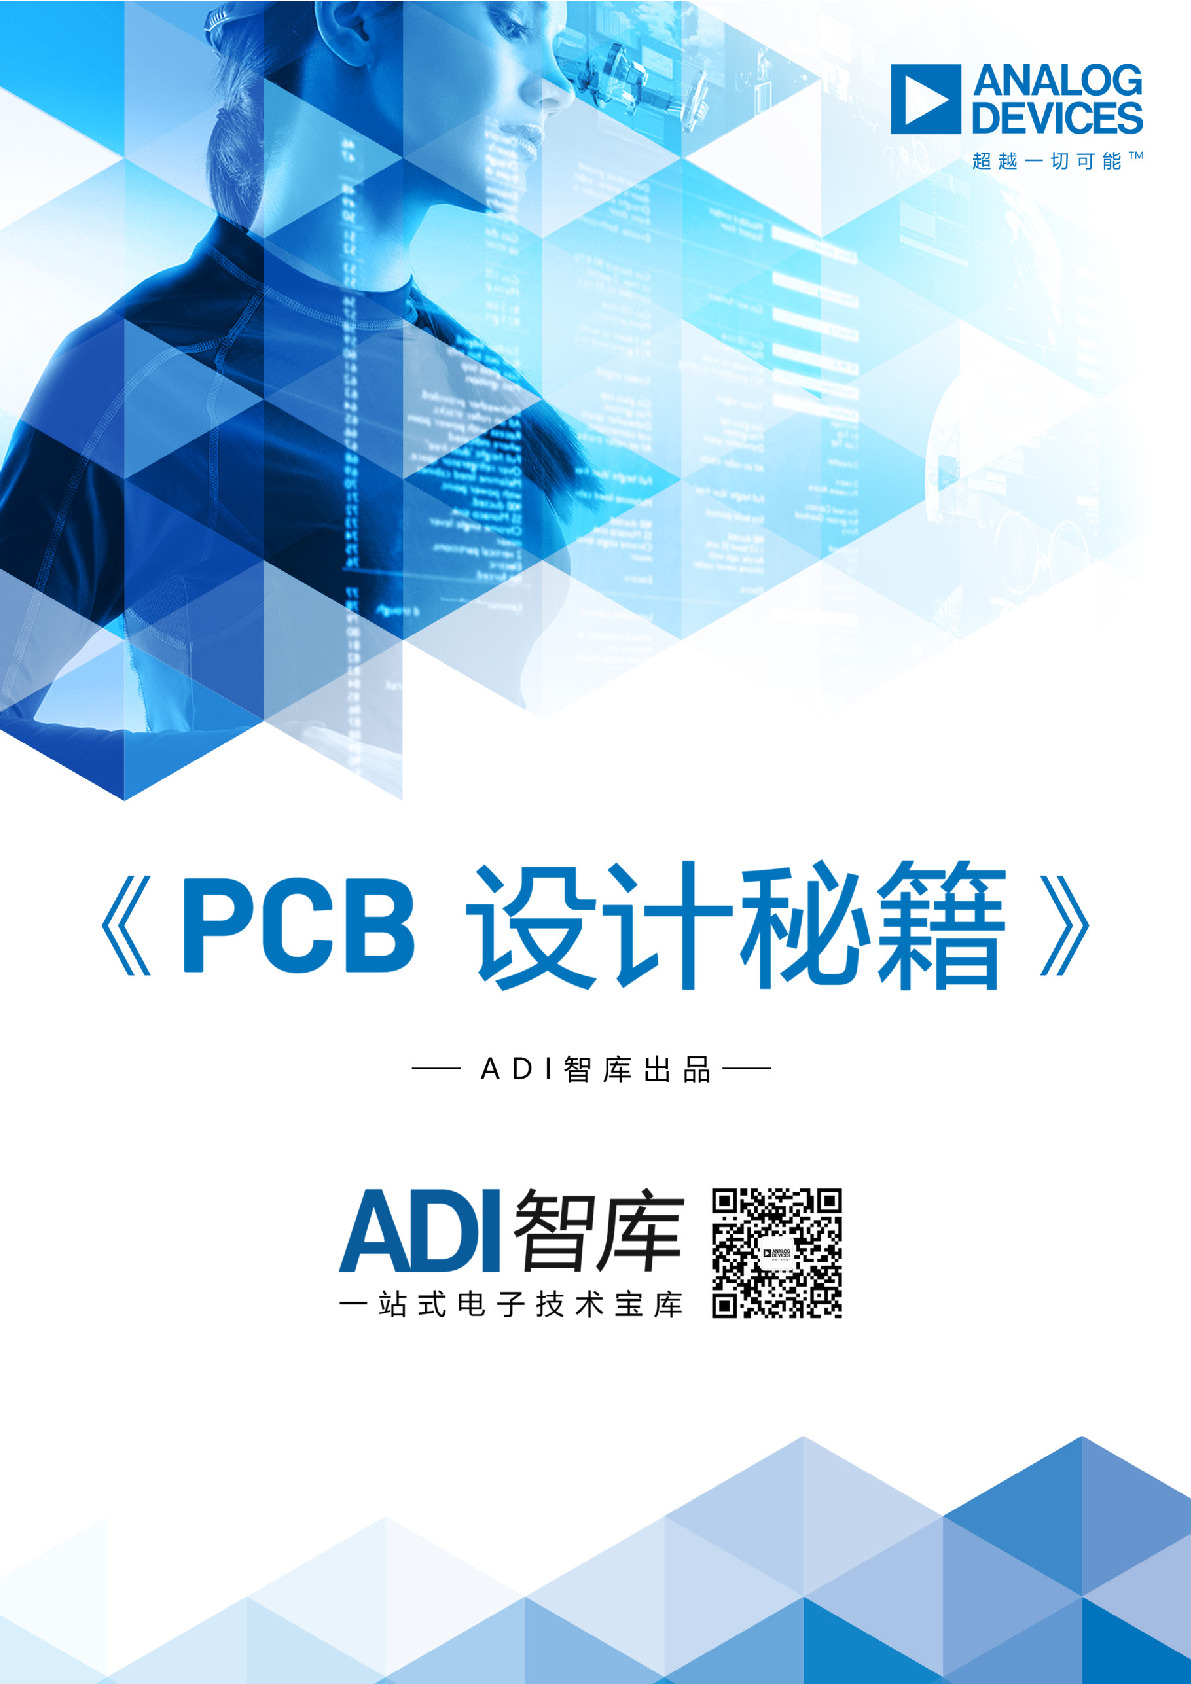 ADI官方-PCB设计指南